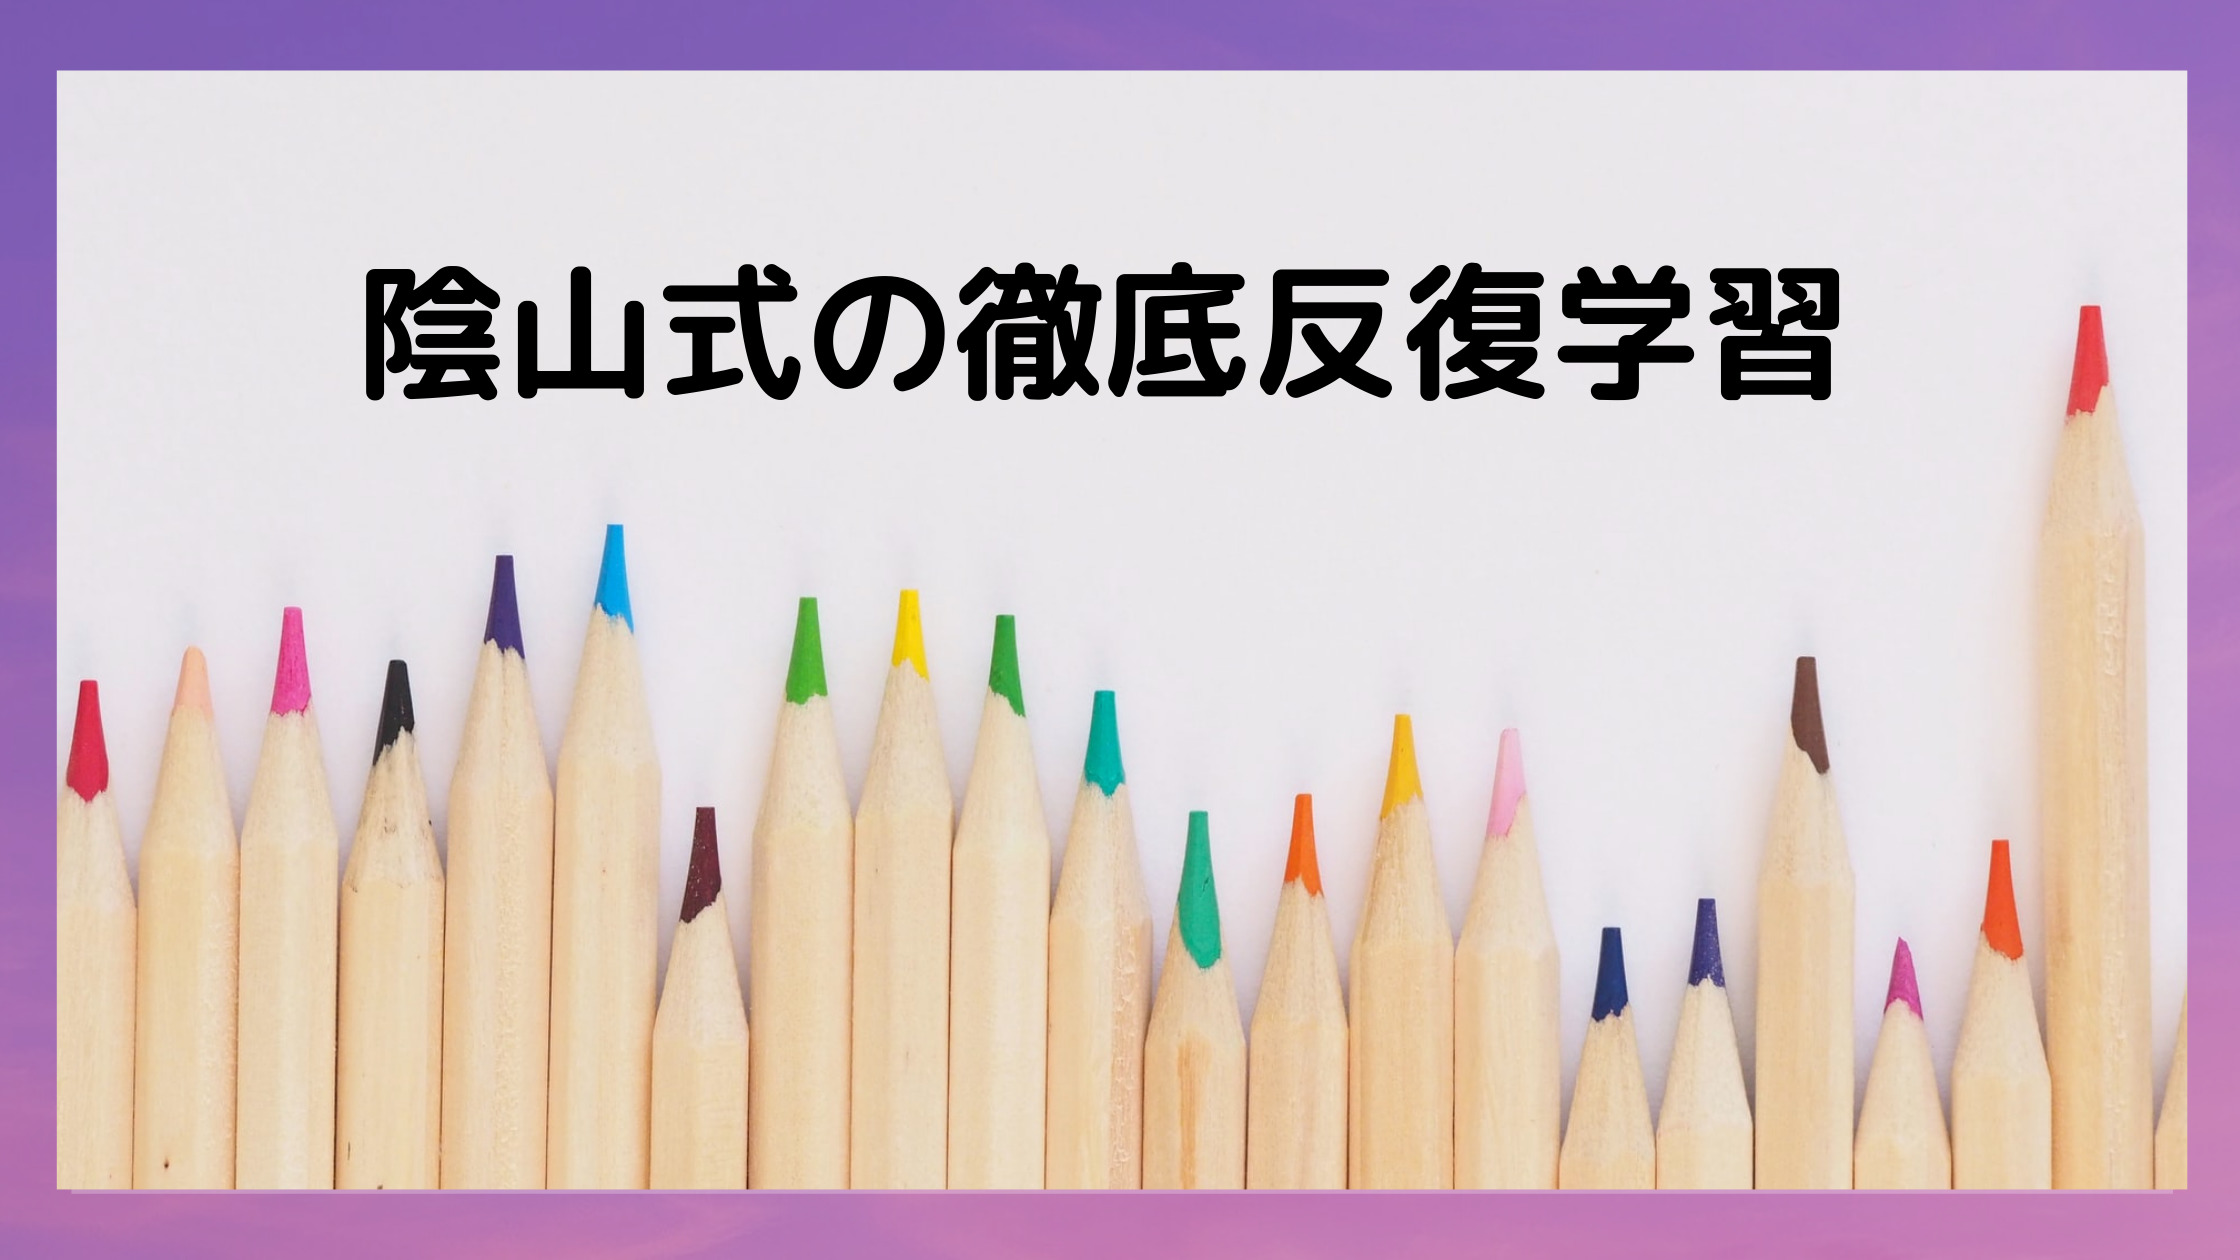 漢字の覚え方 隂山式の徹底反復学習 3冊の隂山メゾット本に学ぶ なまくら母さん